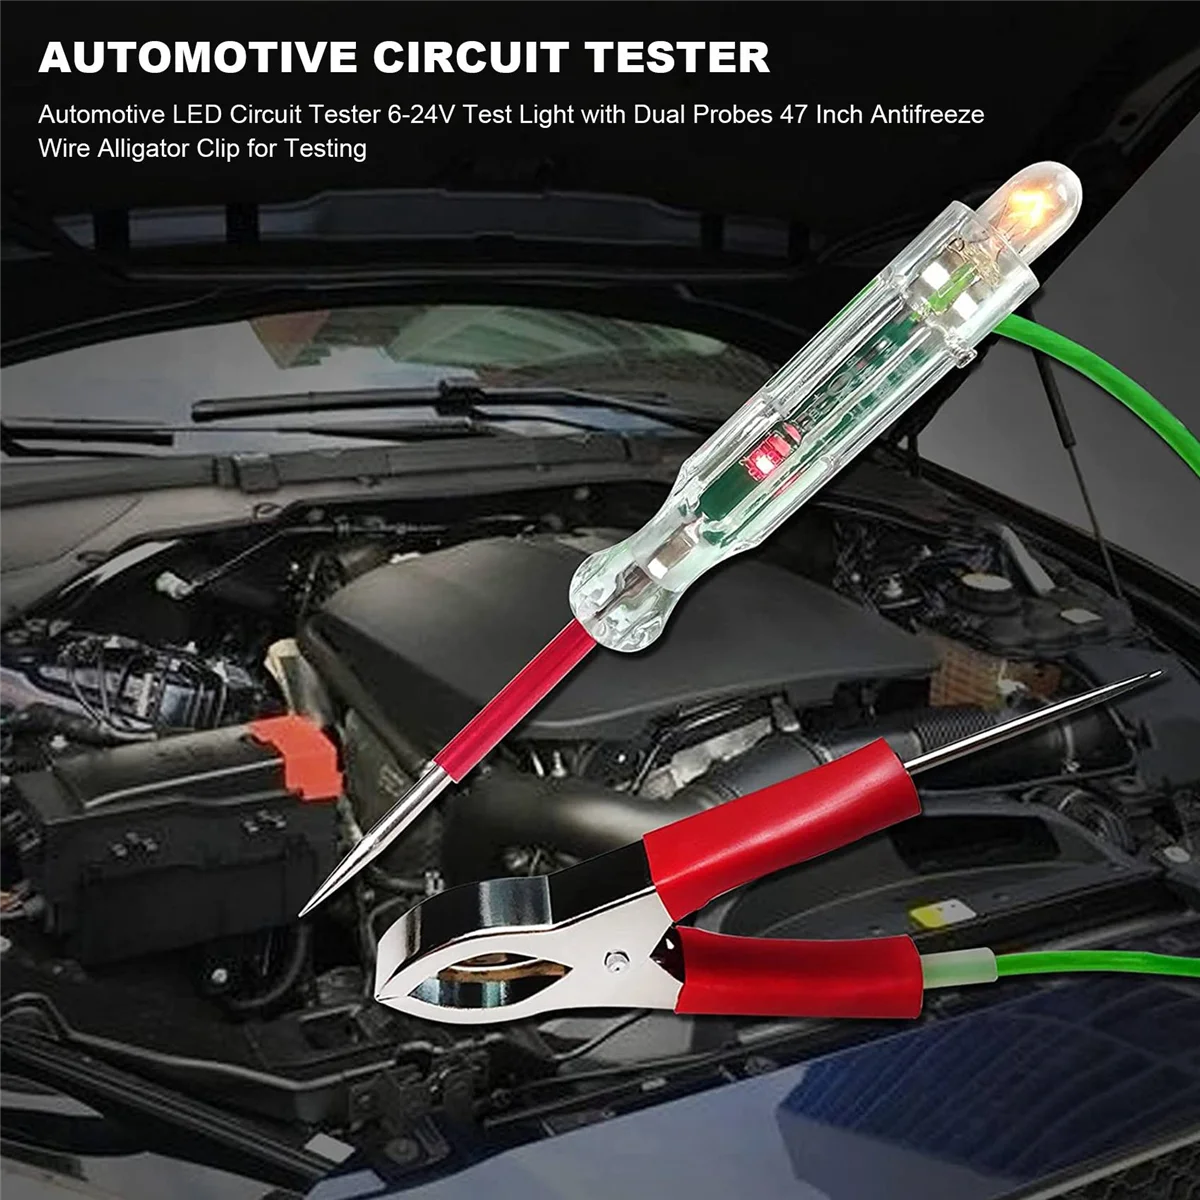  Autóipari LED áramkör tesztelő 6-24V tesztlámpa kettős szondával 47 hüvelykes fagyálló huzal aligátor klip teszteléshez